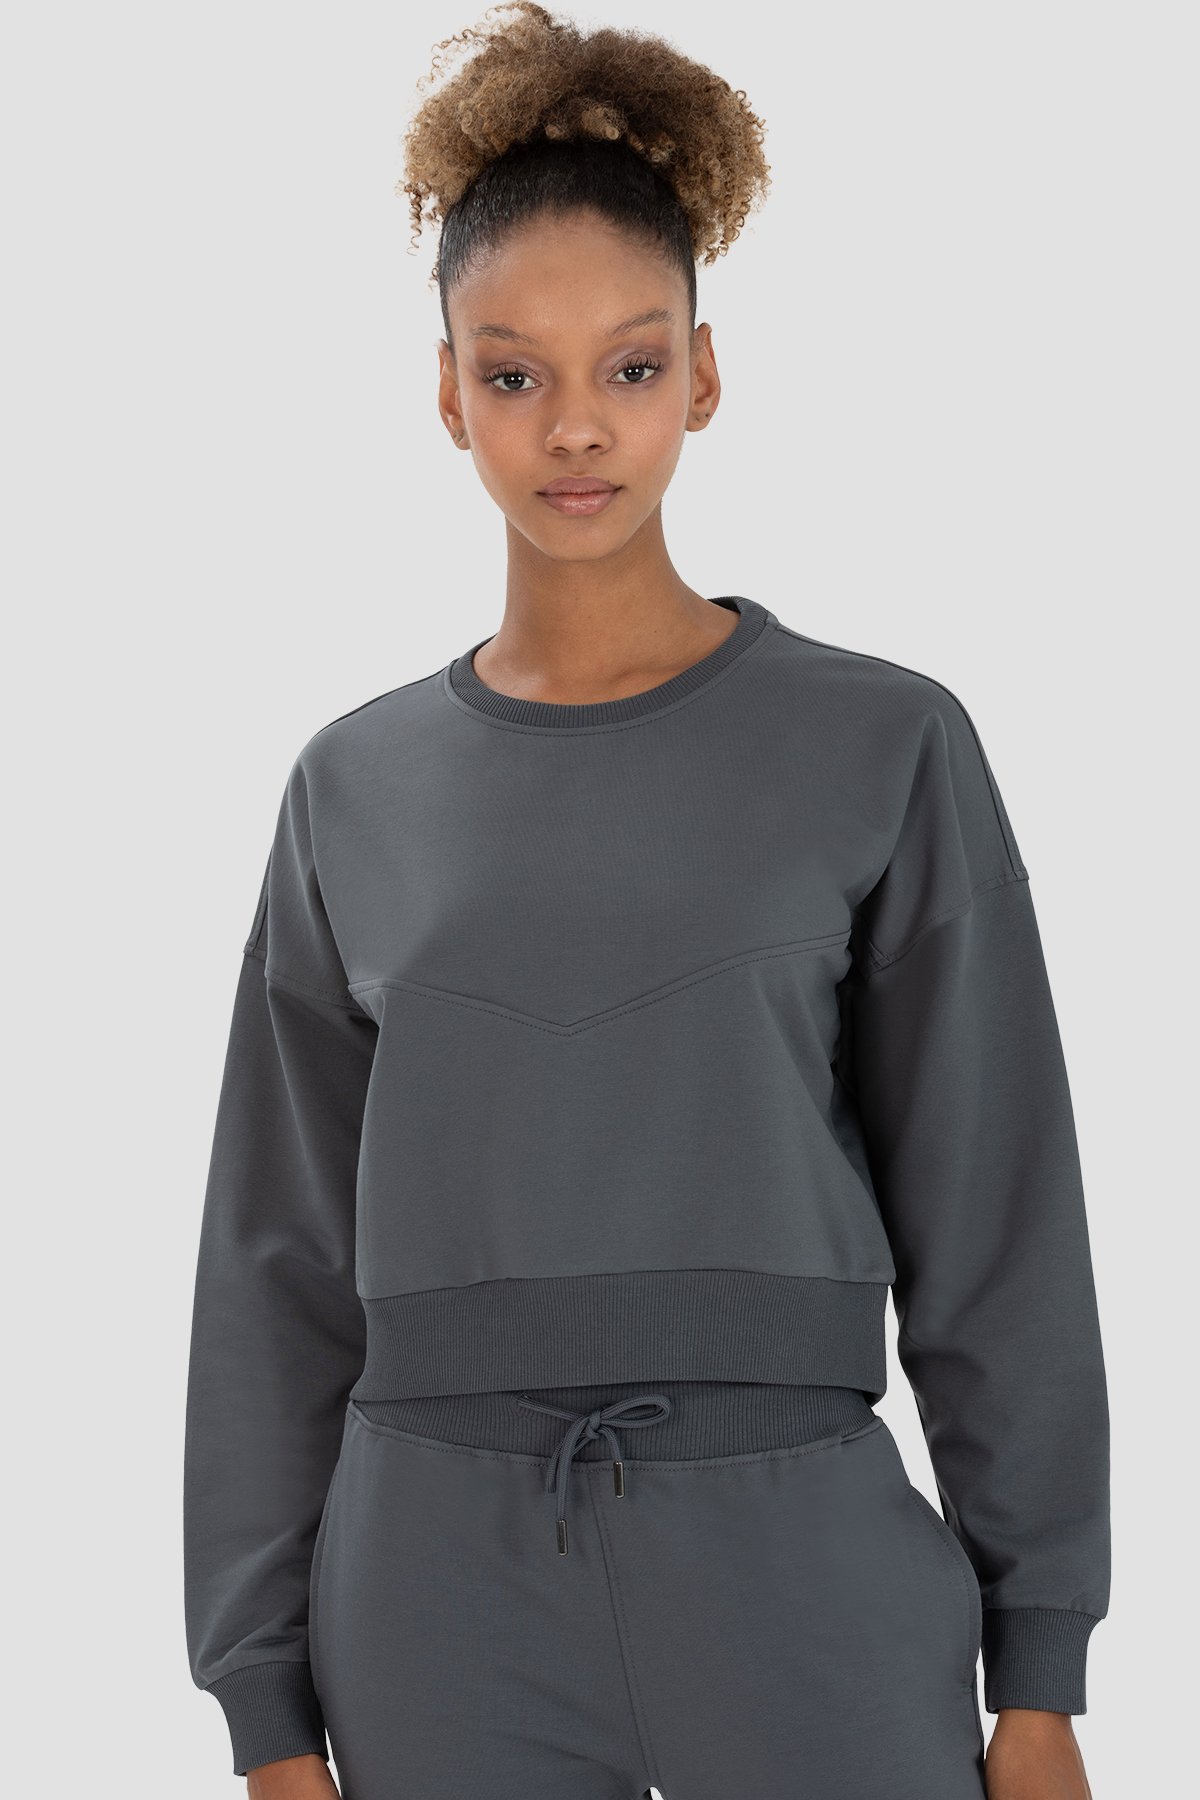 Ena Oversize Smoke Grey Sweatshirt - Super Stacy